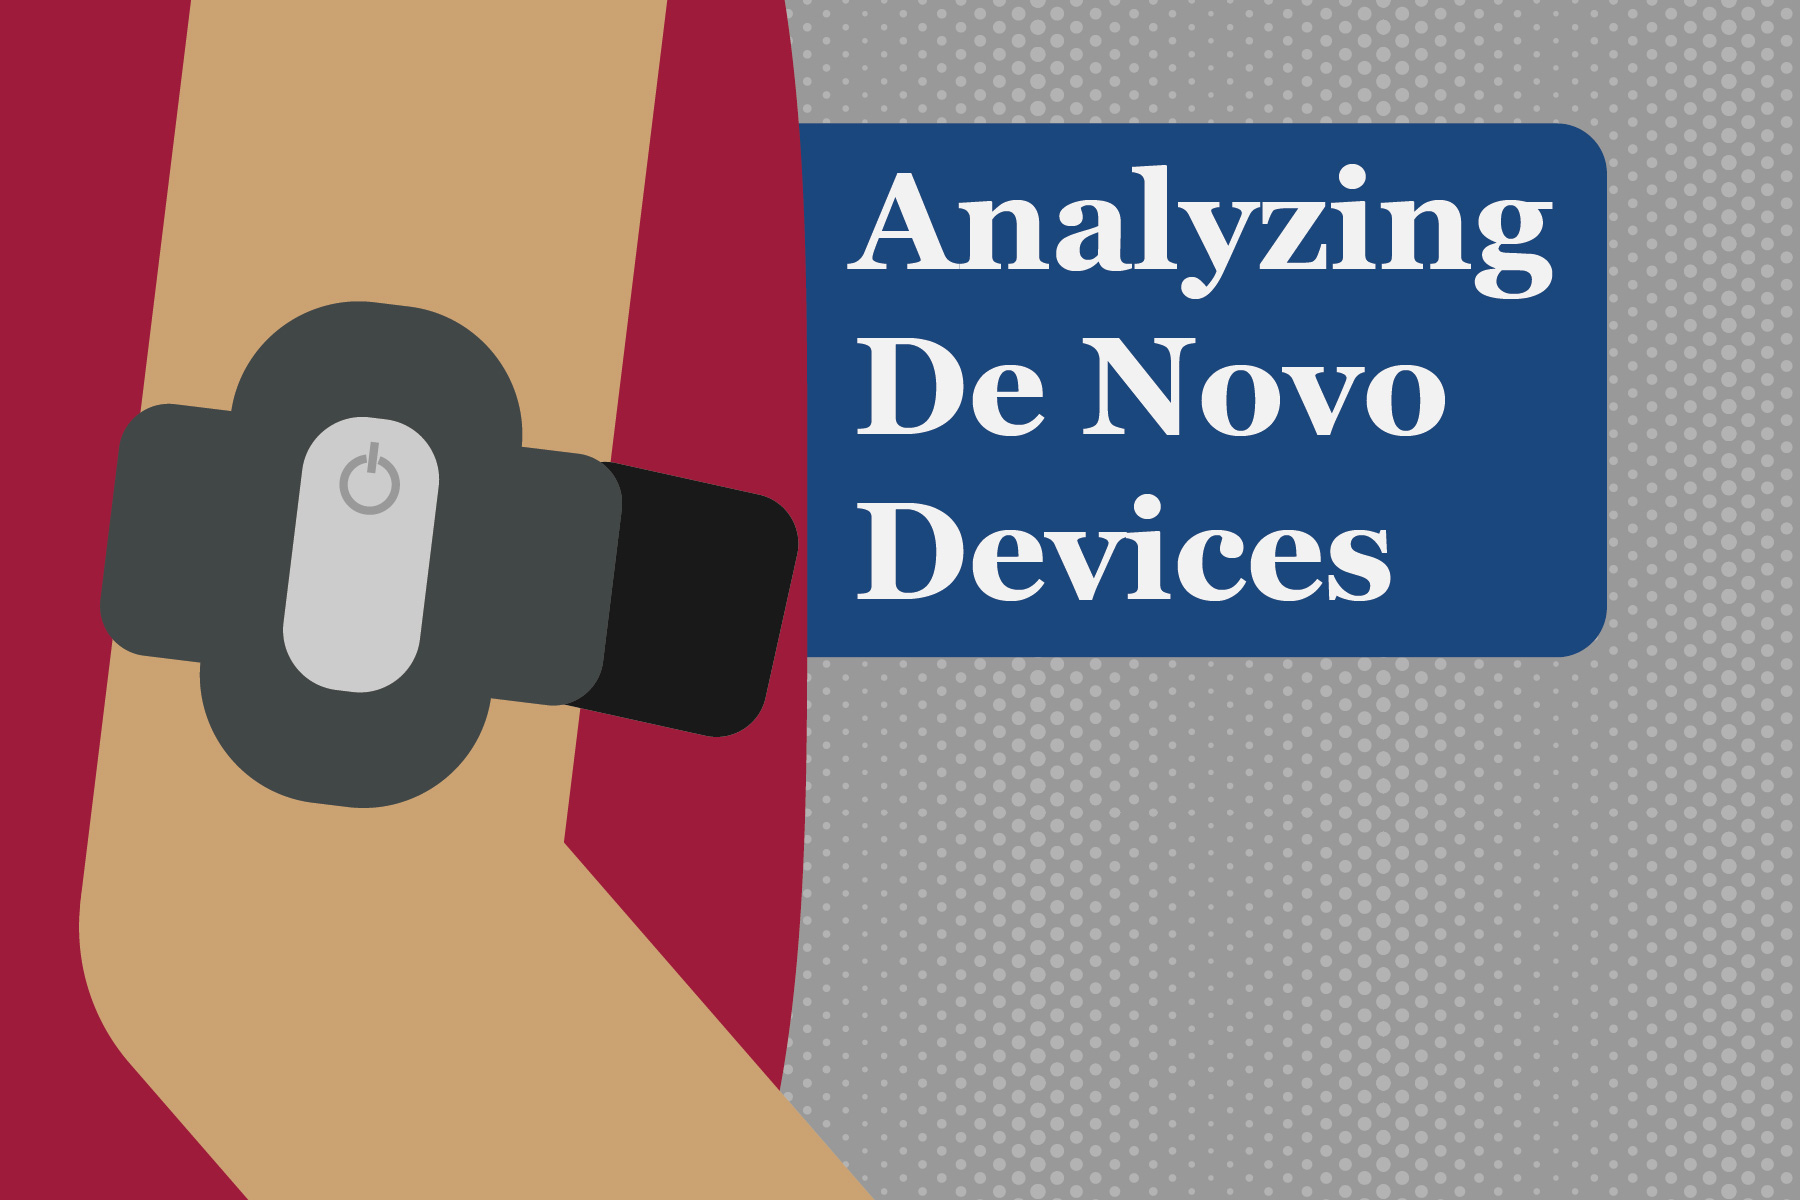 Analyzing De Novo Devices